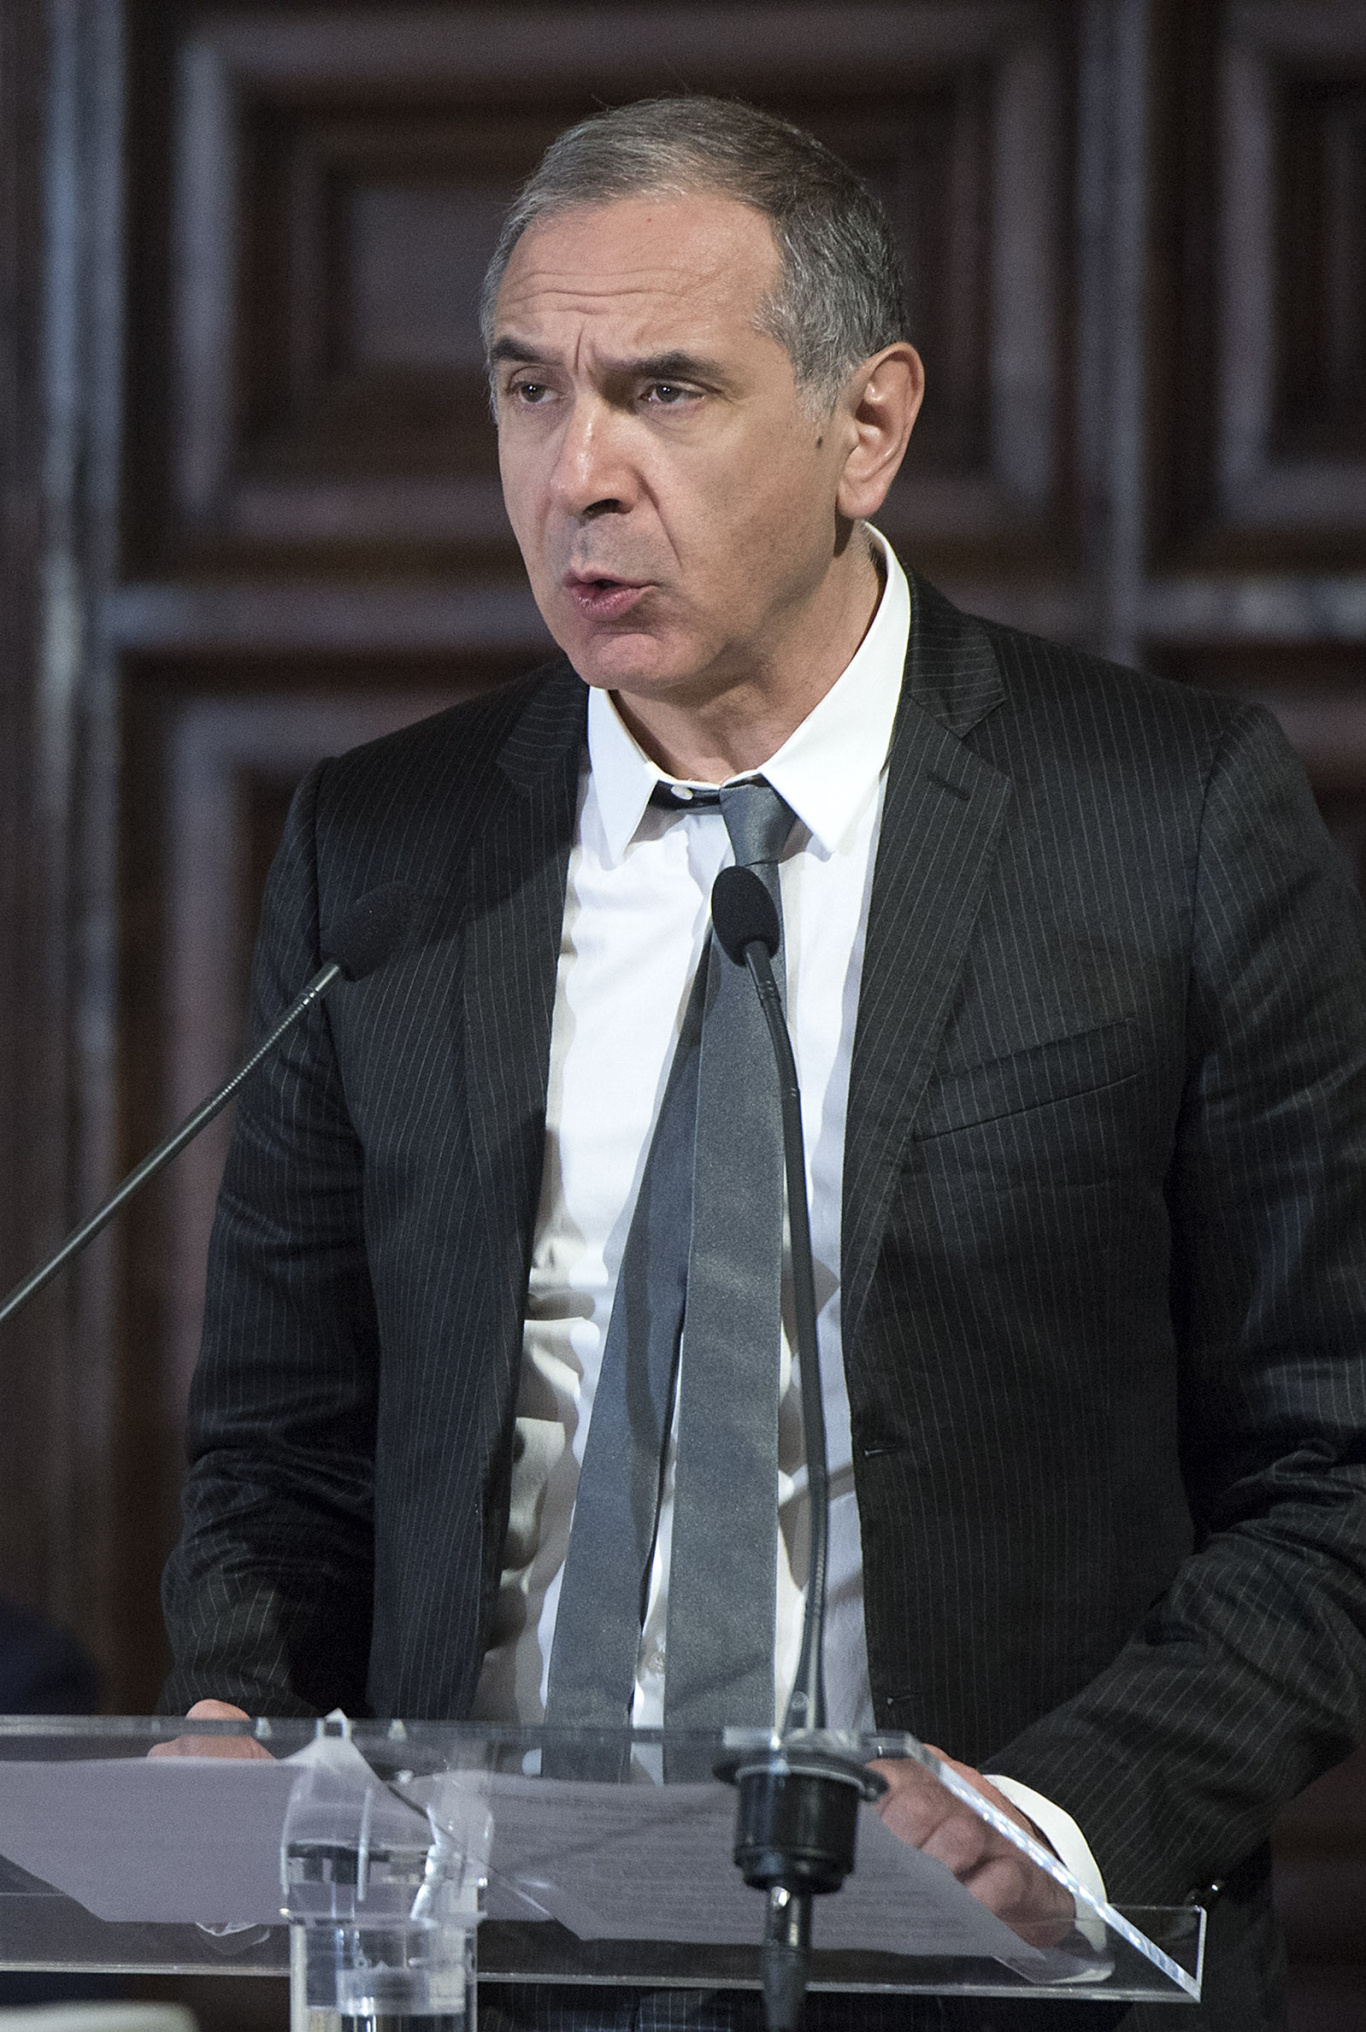 President Carlo Capasa at Giornata della qualità 2015